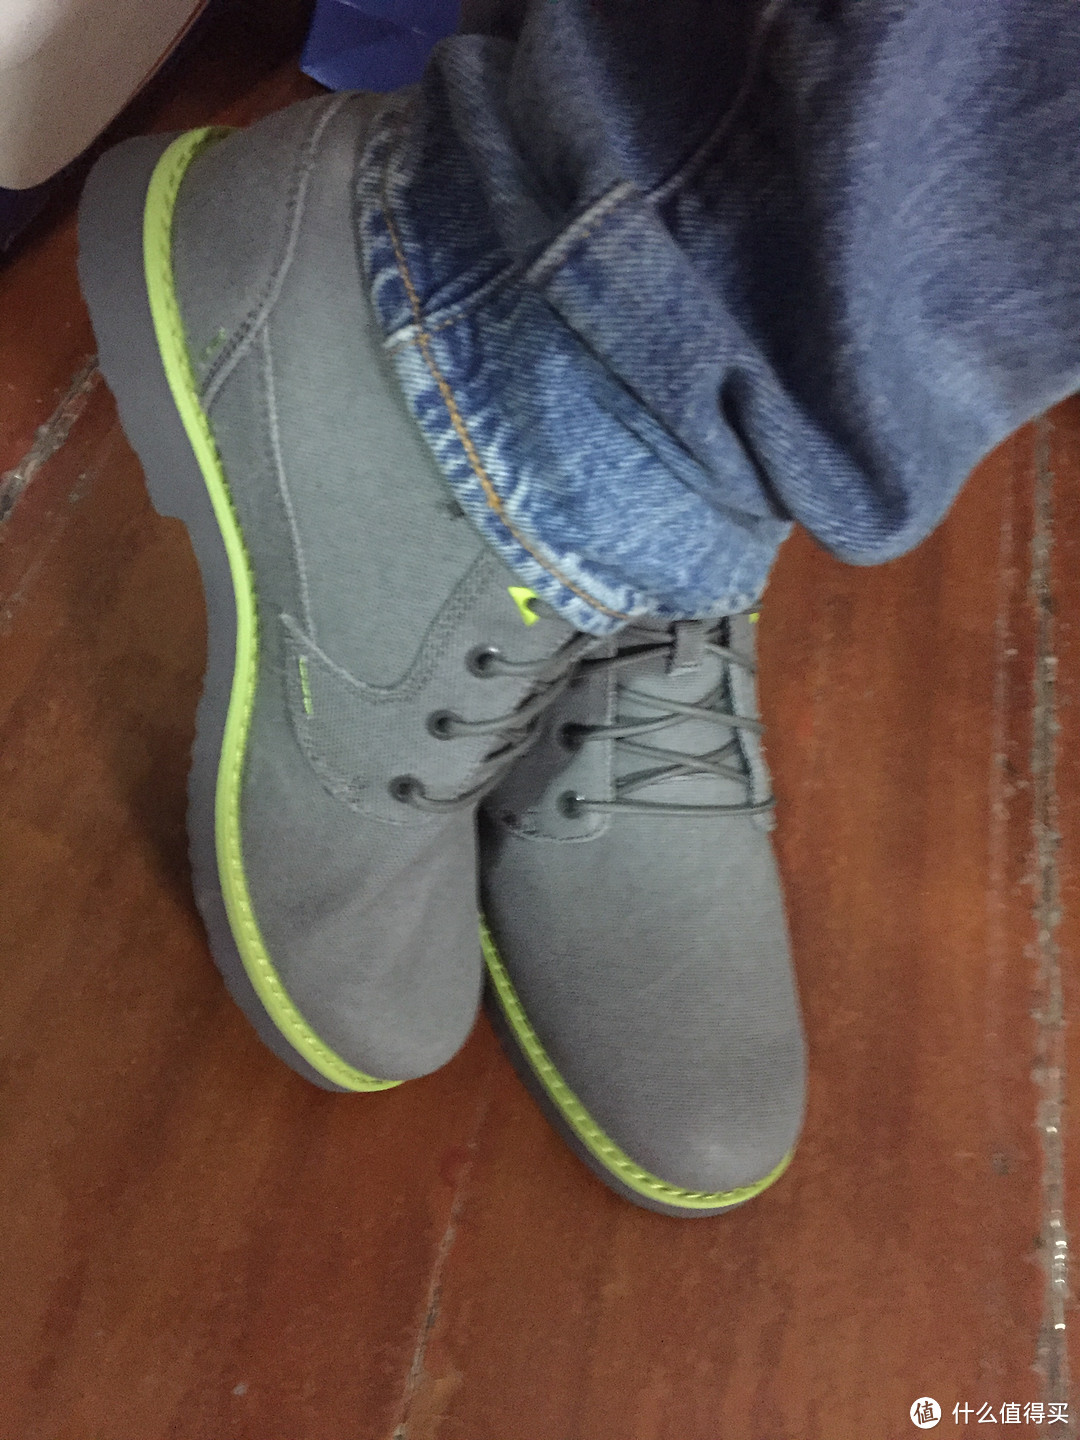 #本站首晒# 一双骚气的鞋子 — Teva Mason Waxed 男士休闲短靴